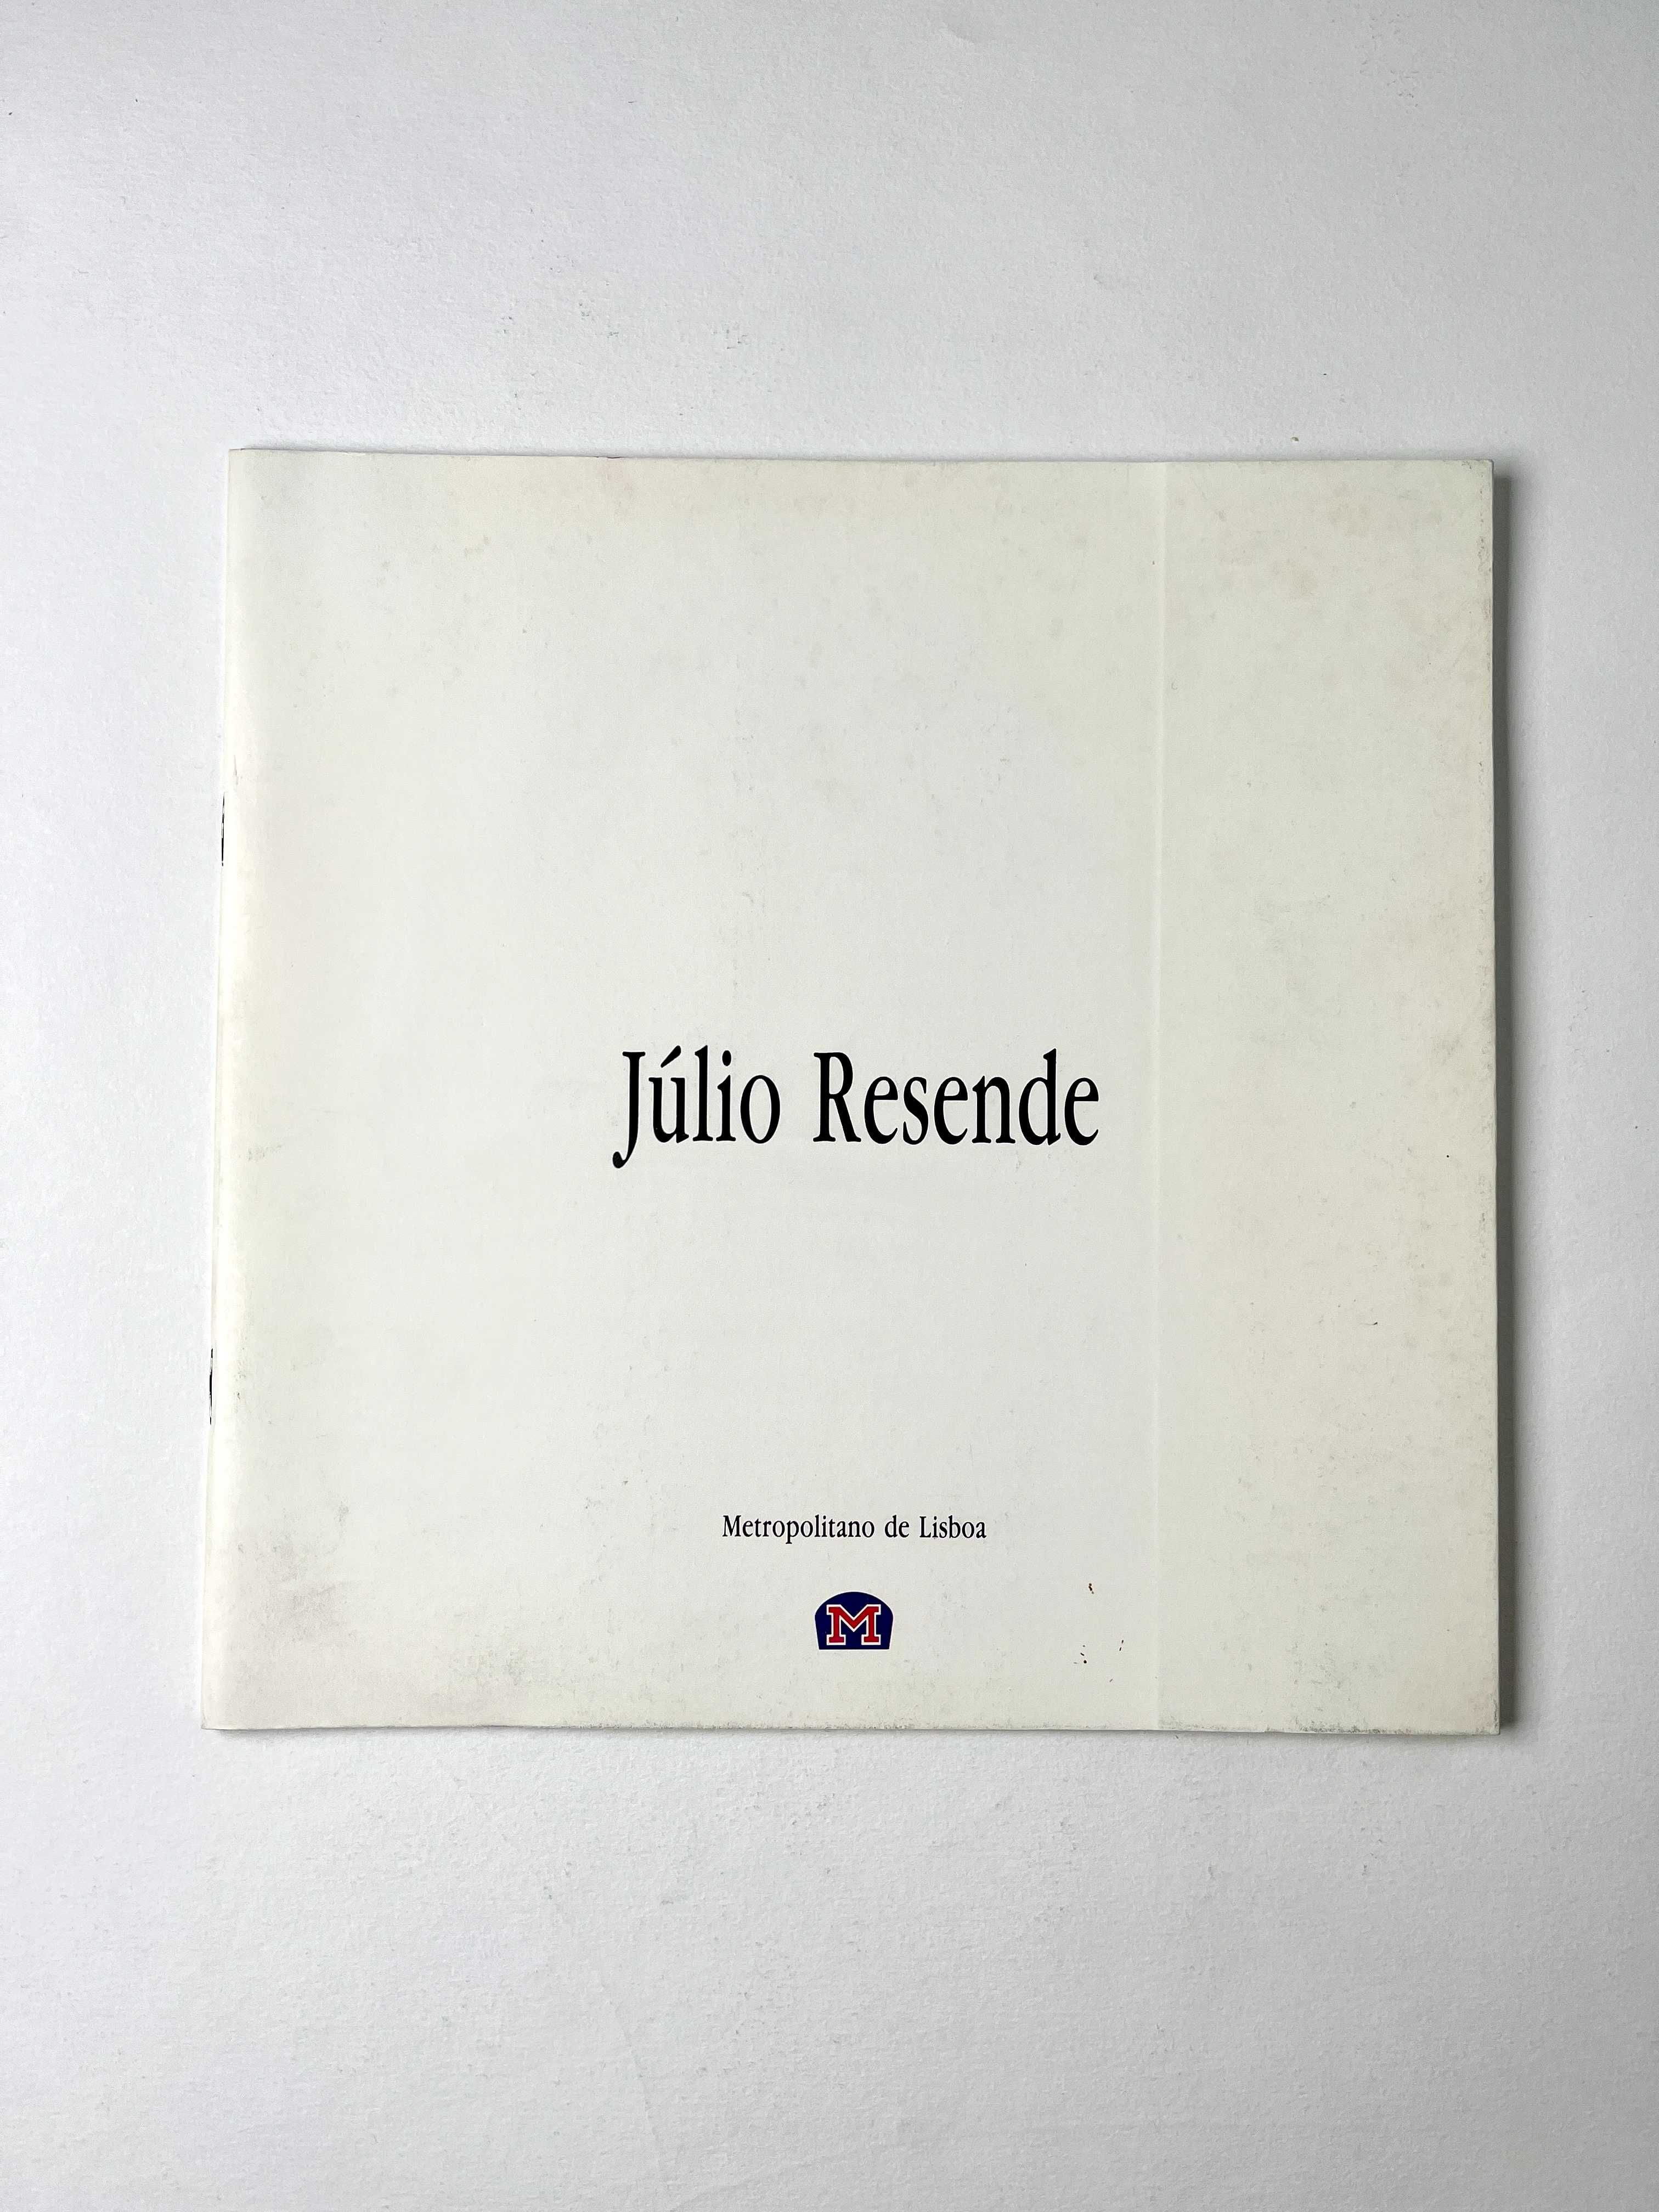 Júlio Resende Estudos Estação de Sete Rios Publicação 1992